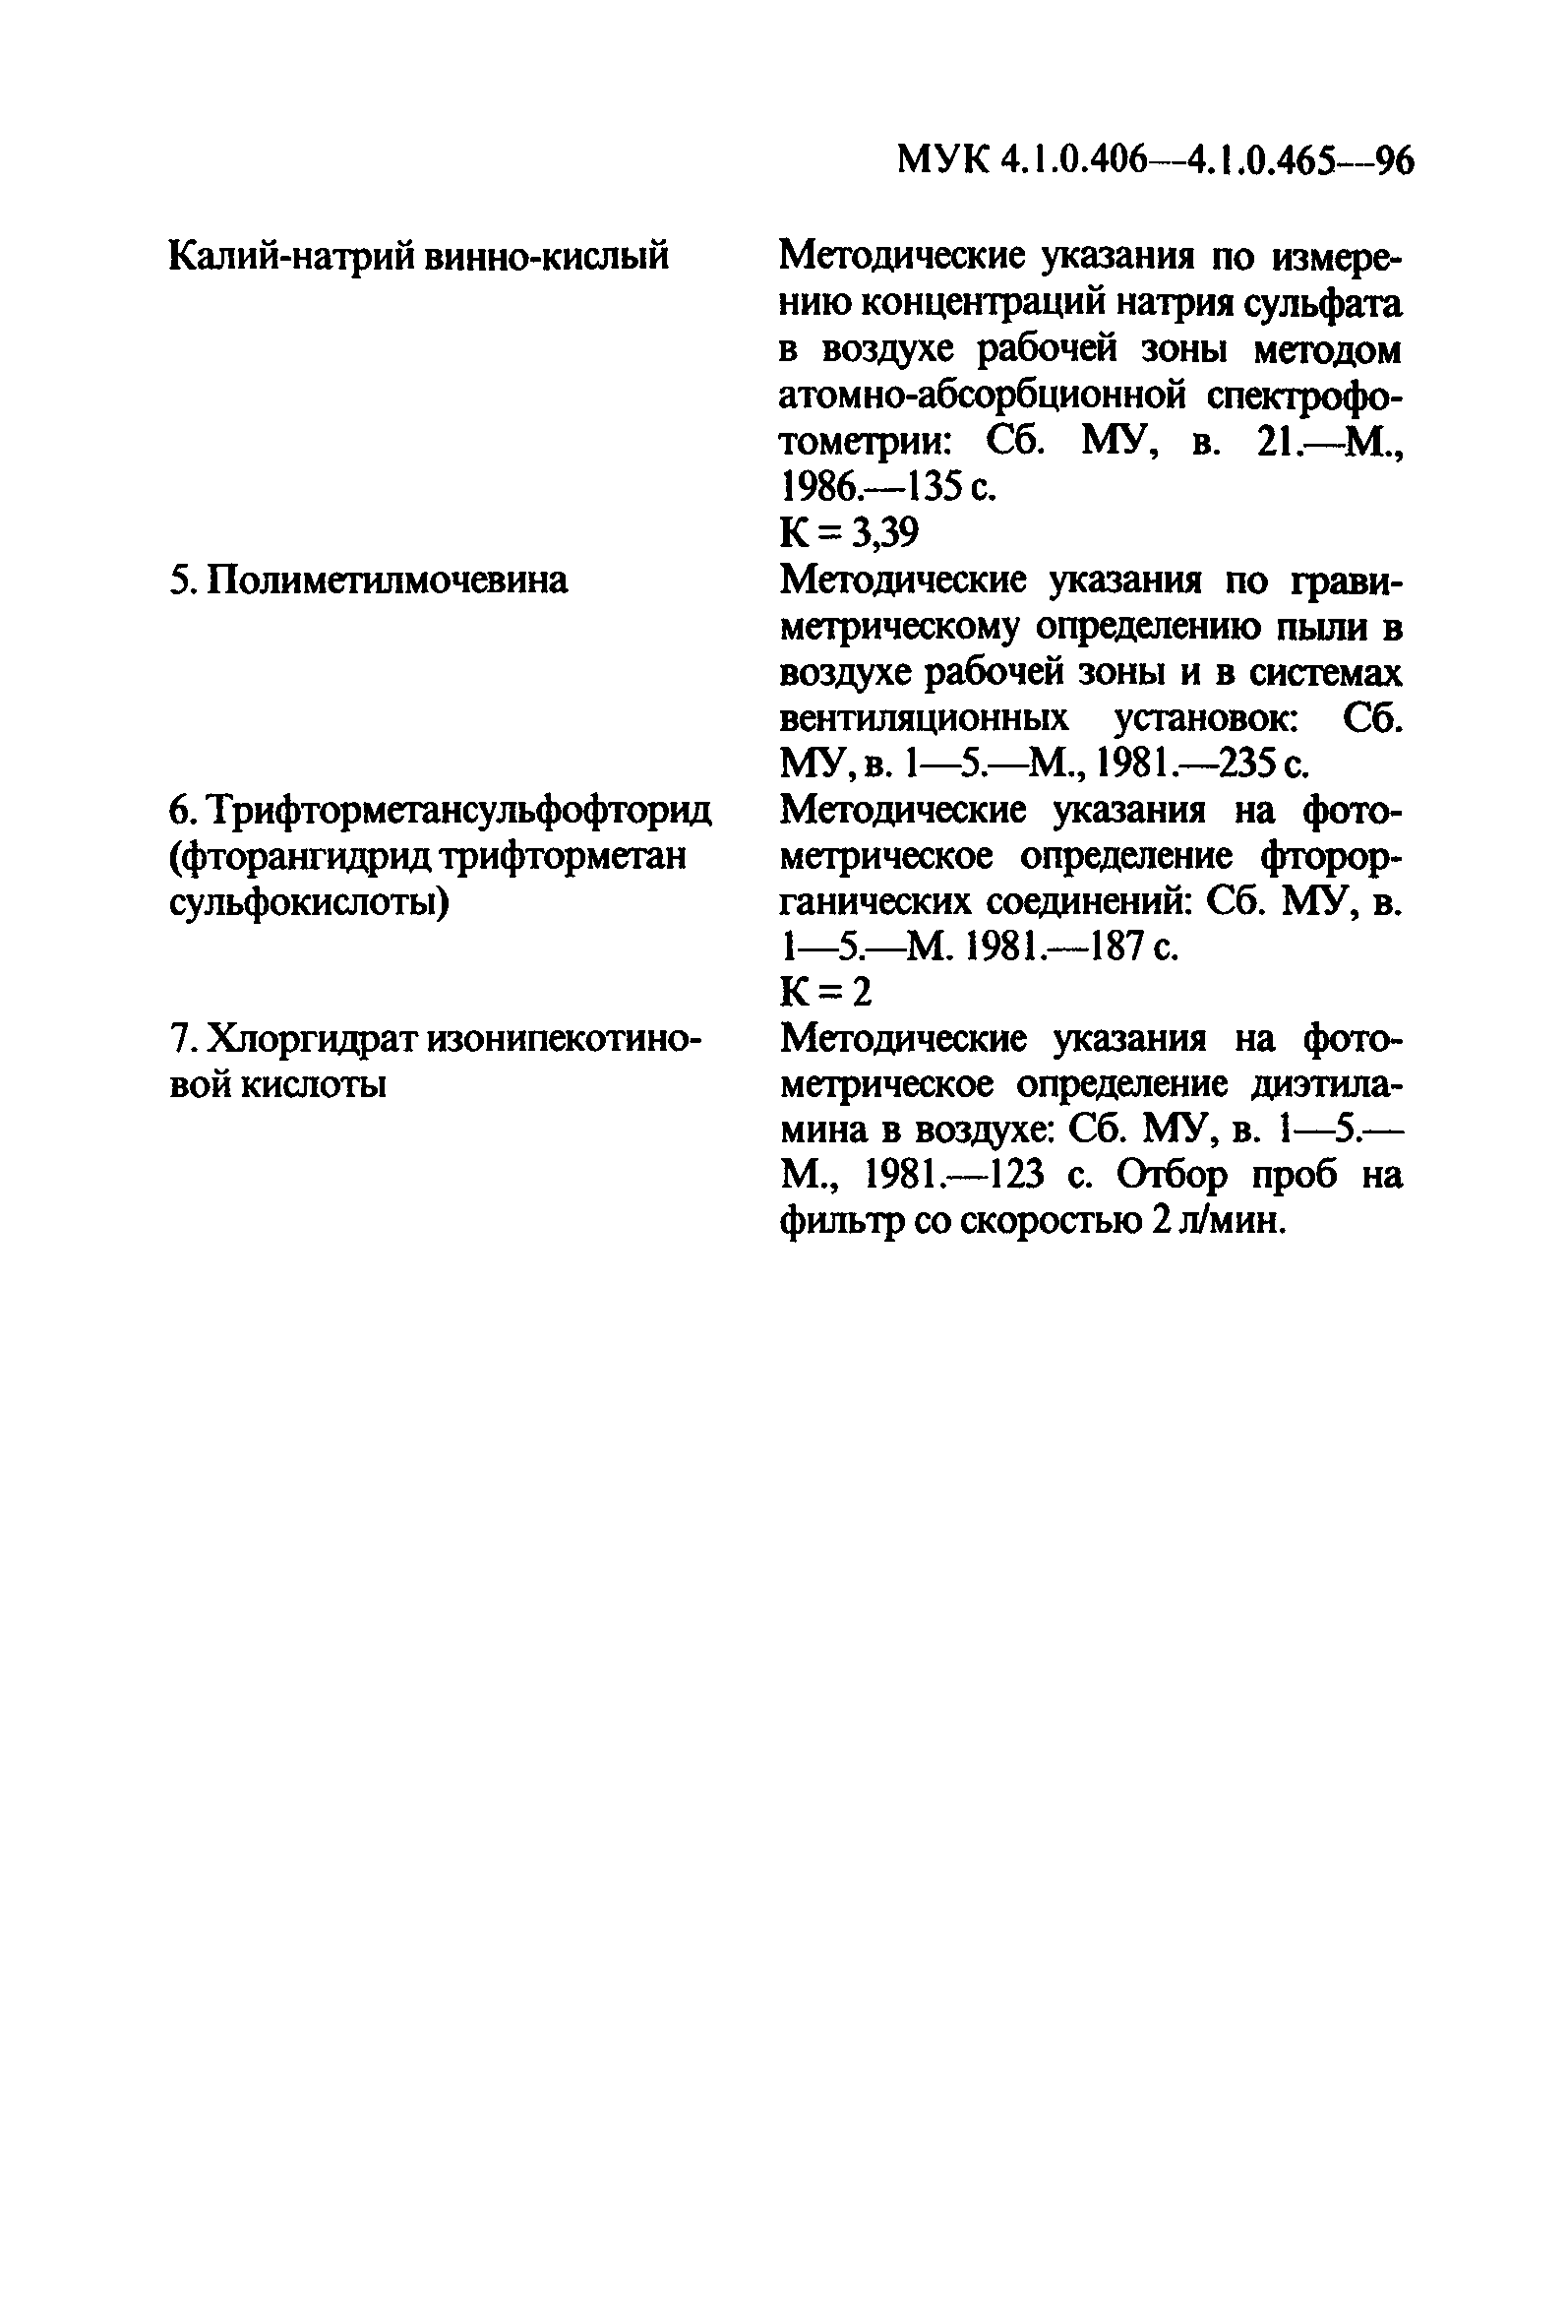 МУК 4.1.0.414-96